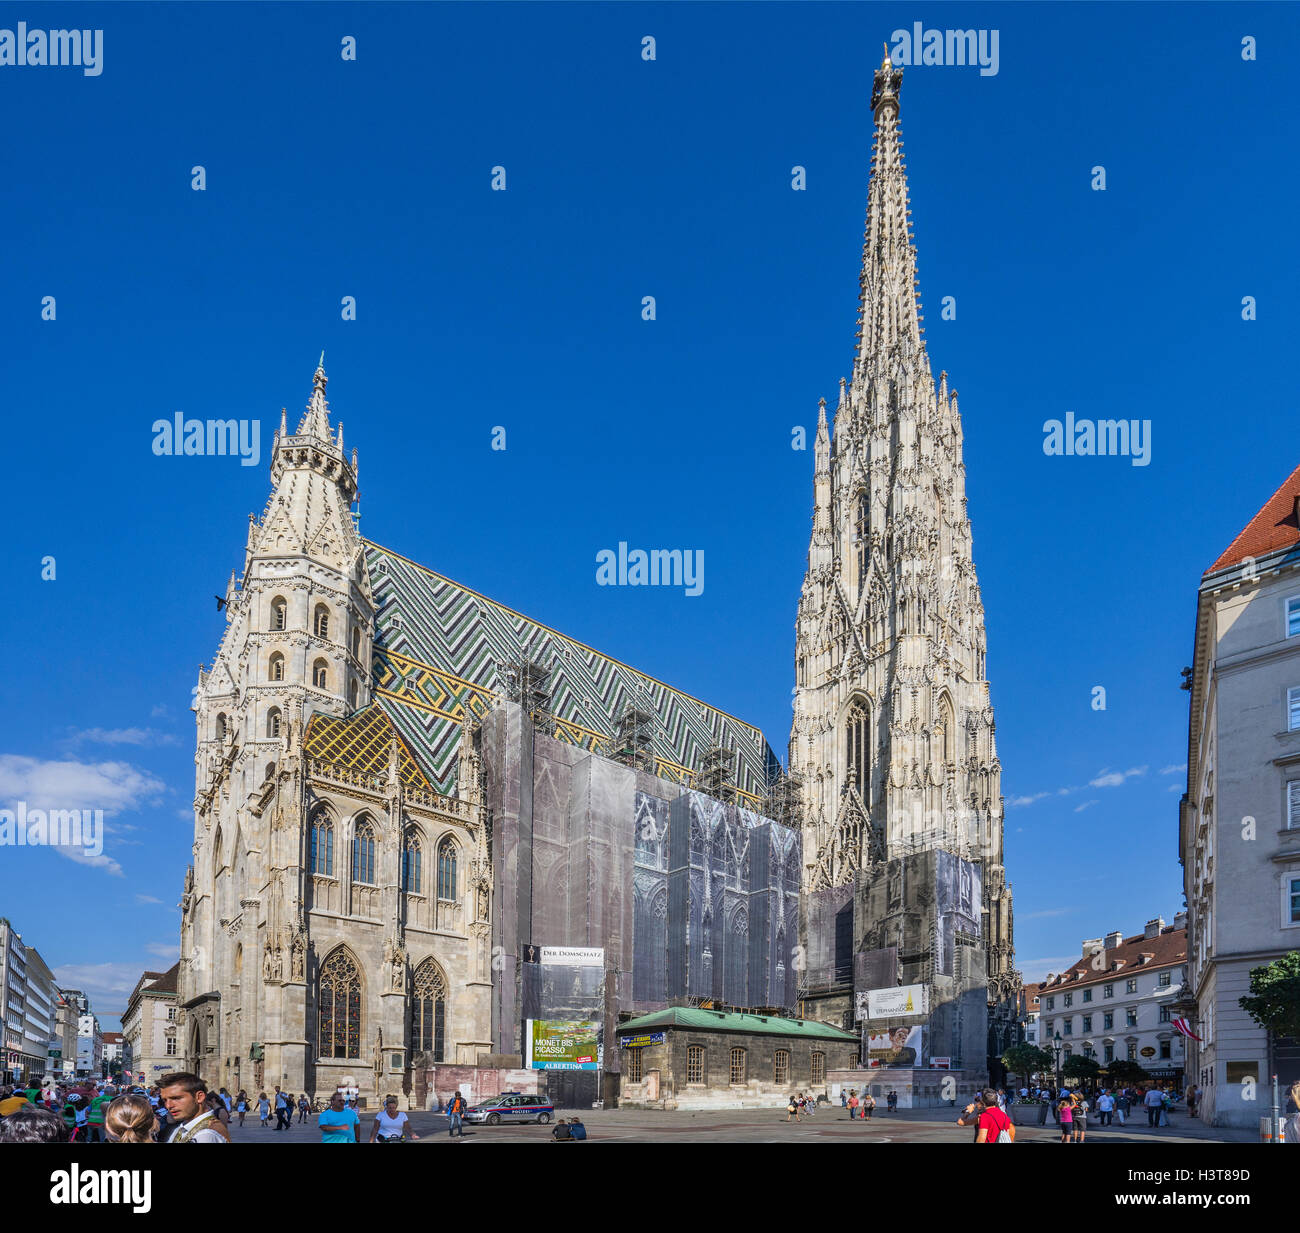 Austria, Viena, Stephansplatz, hábilmente encubierto effords conservación y restauración en la Catedral de San Esteban Foto de stock